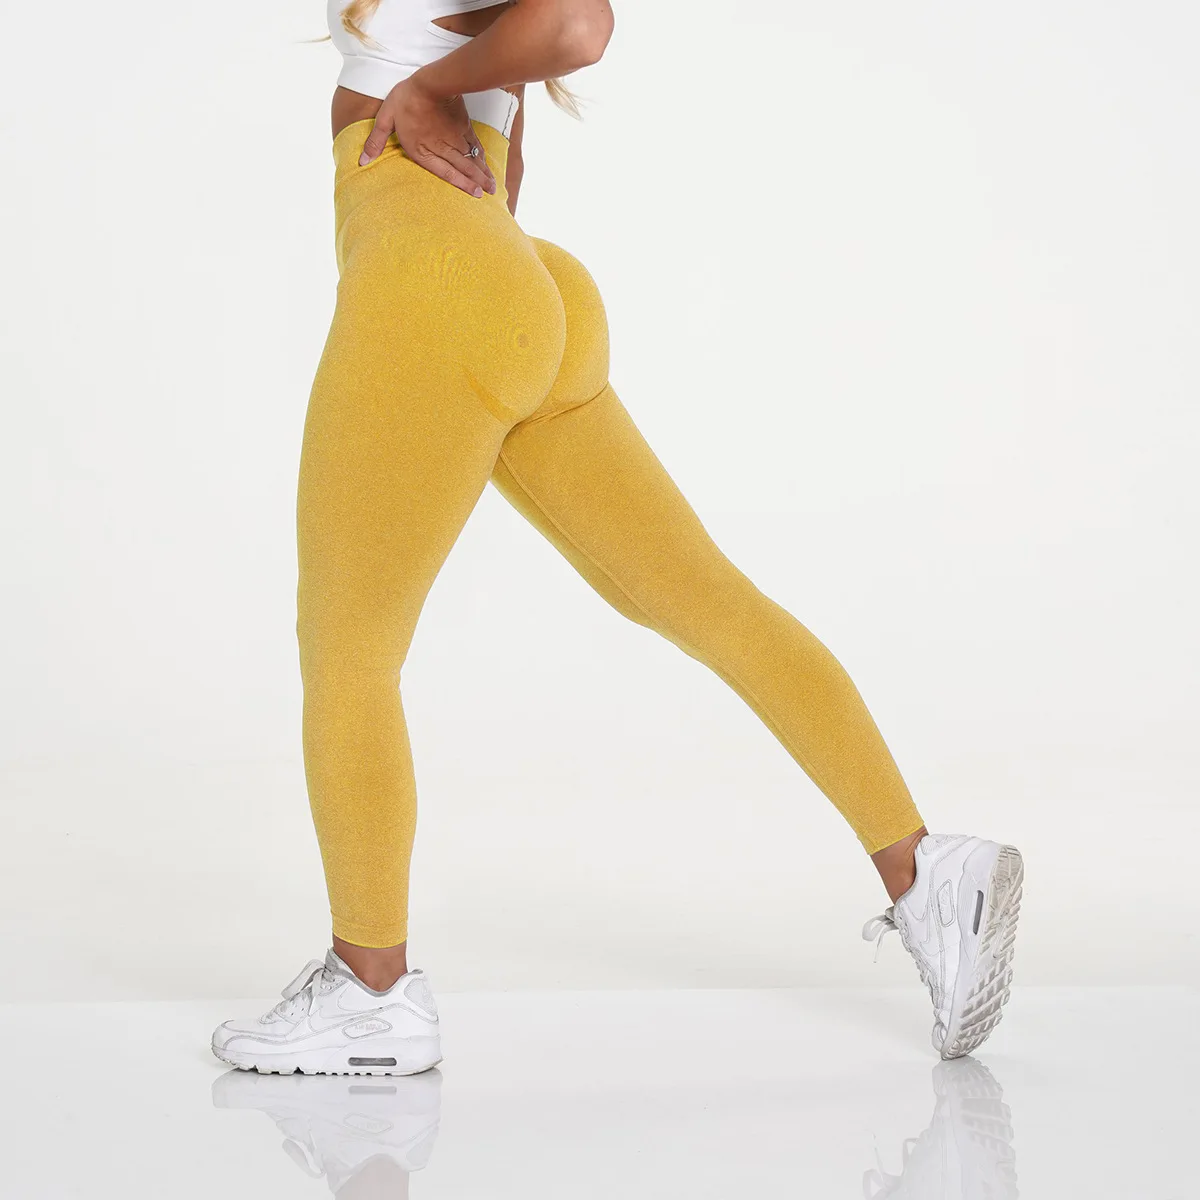 $149 Blanc Noir Women's Yellow Yolo High-Waist Leggings Pants Size L